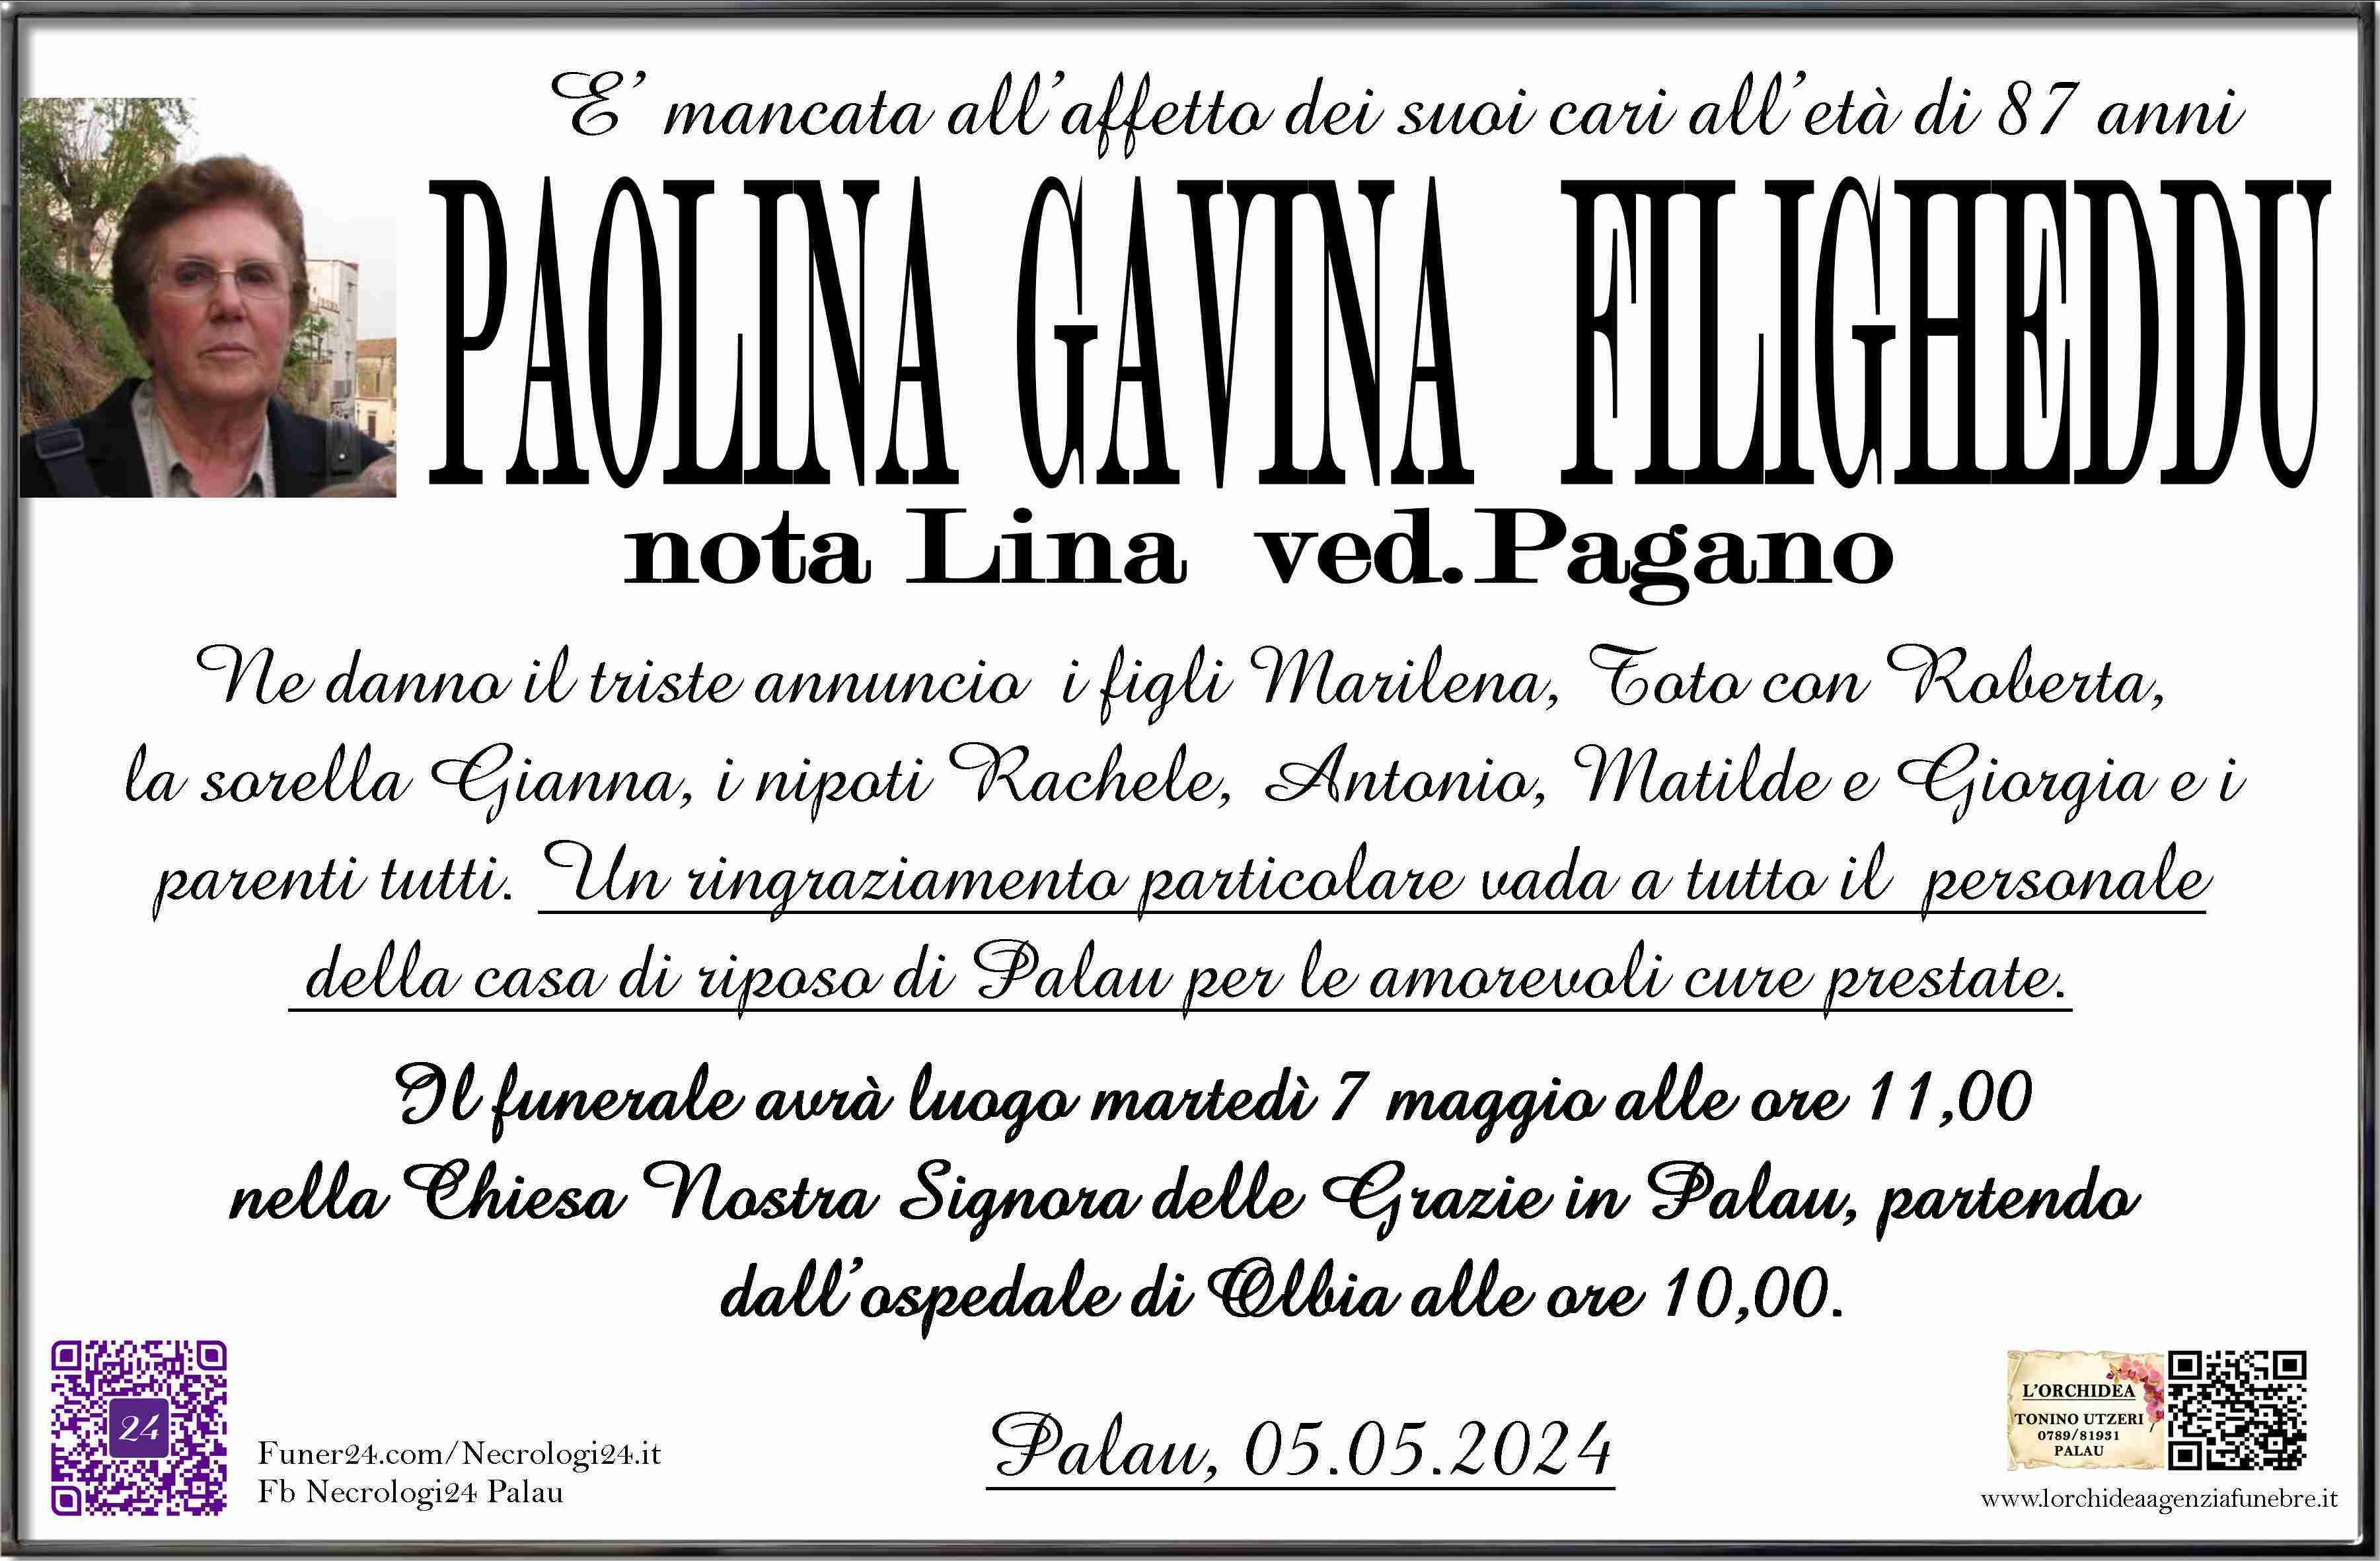 Paolina Gavina Filigheddu